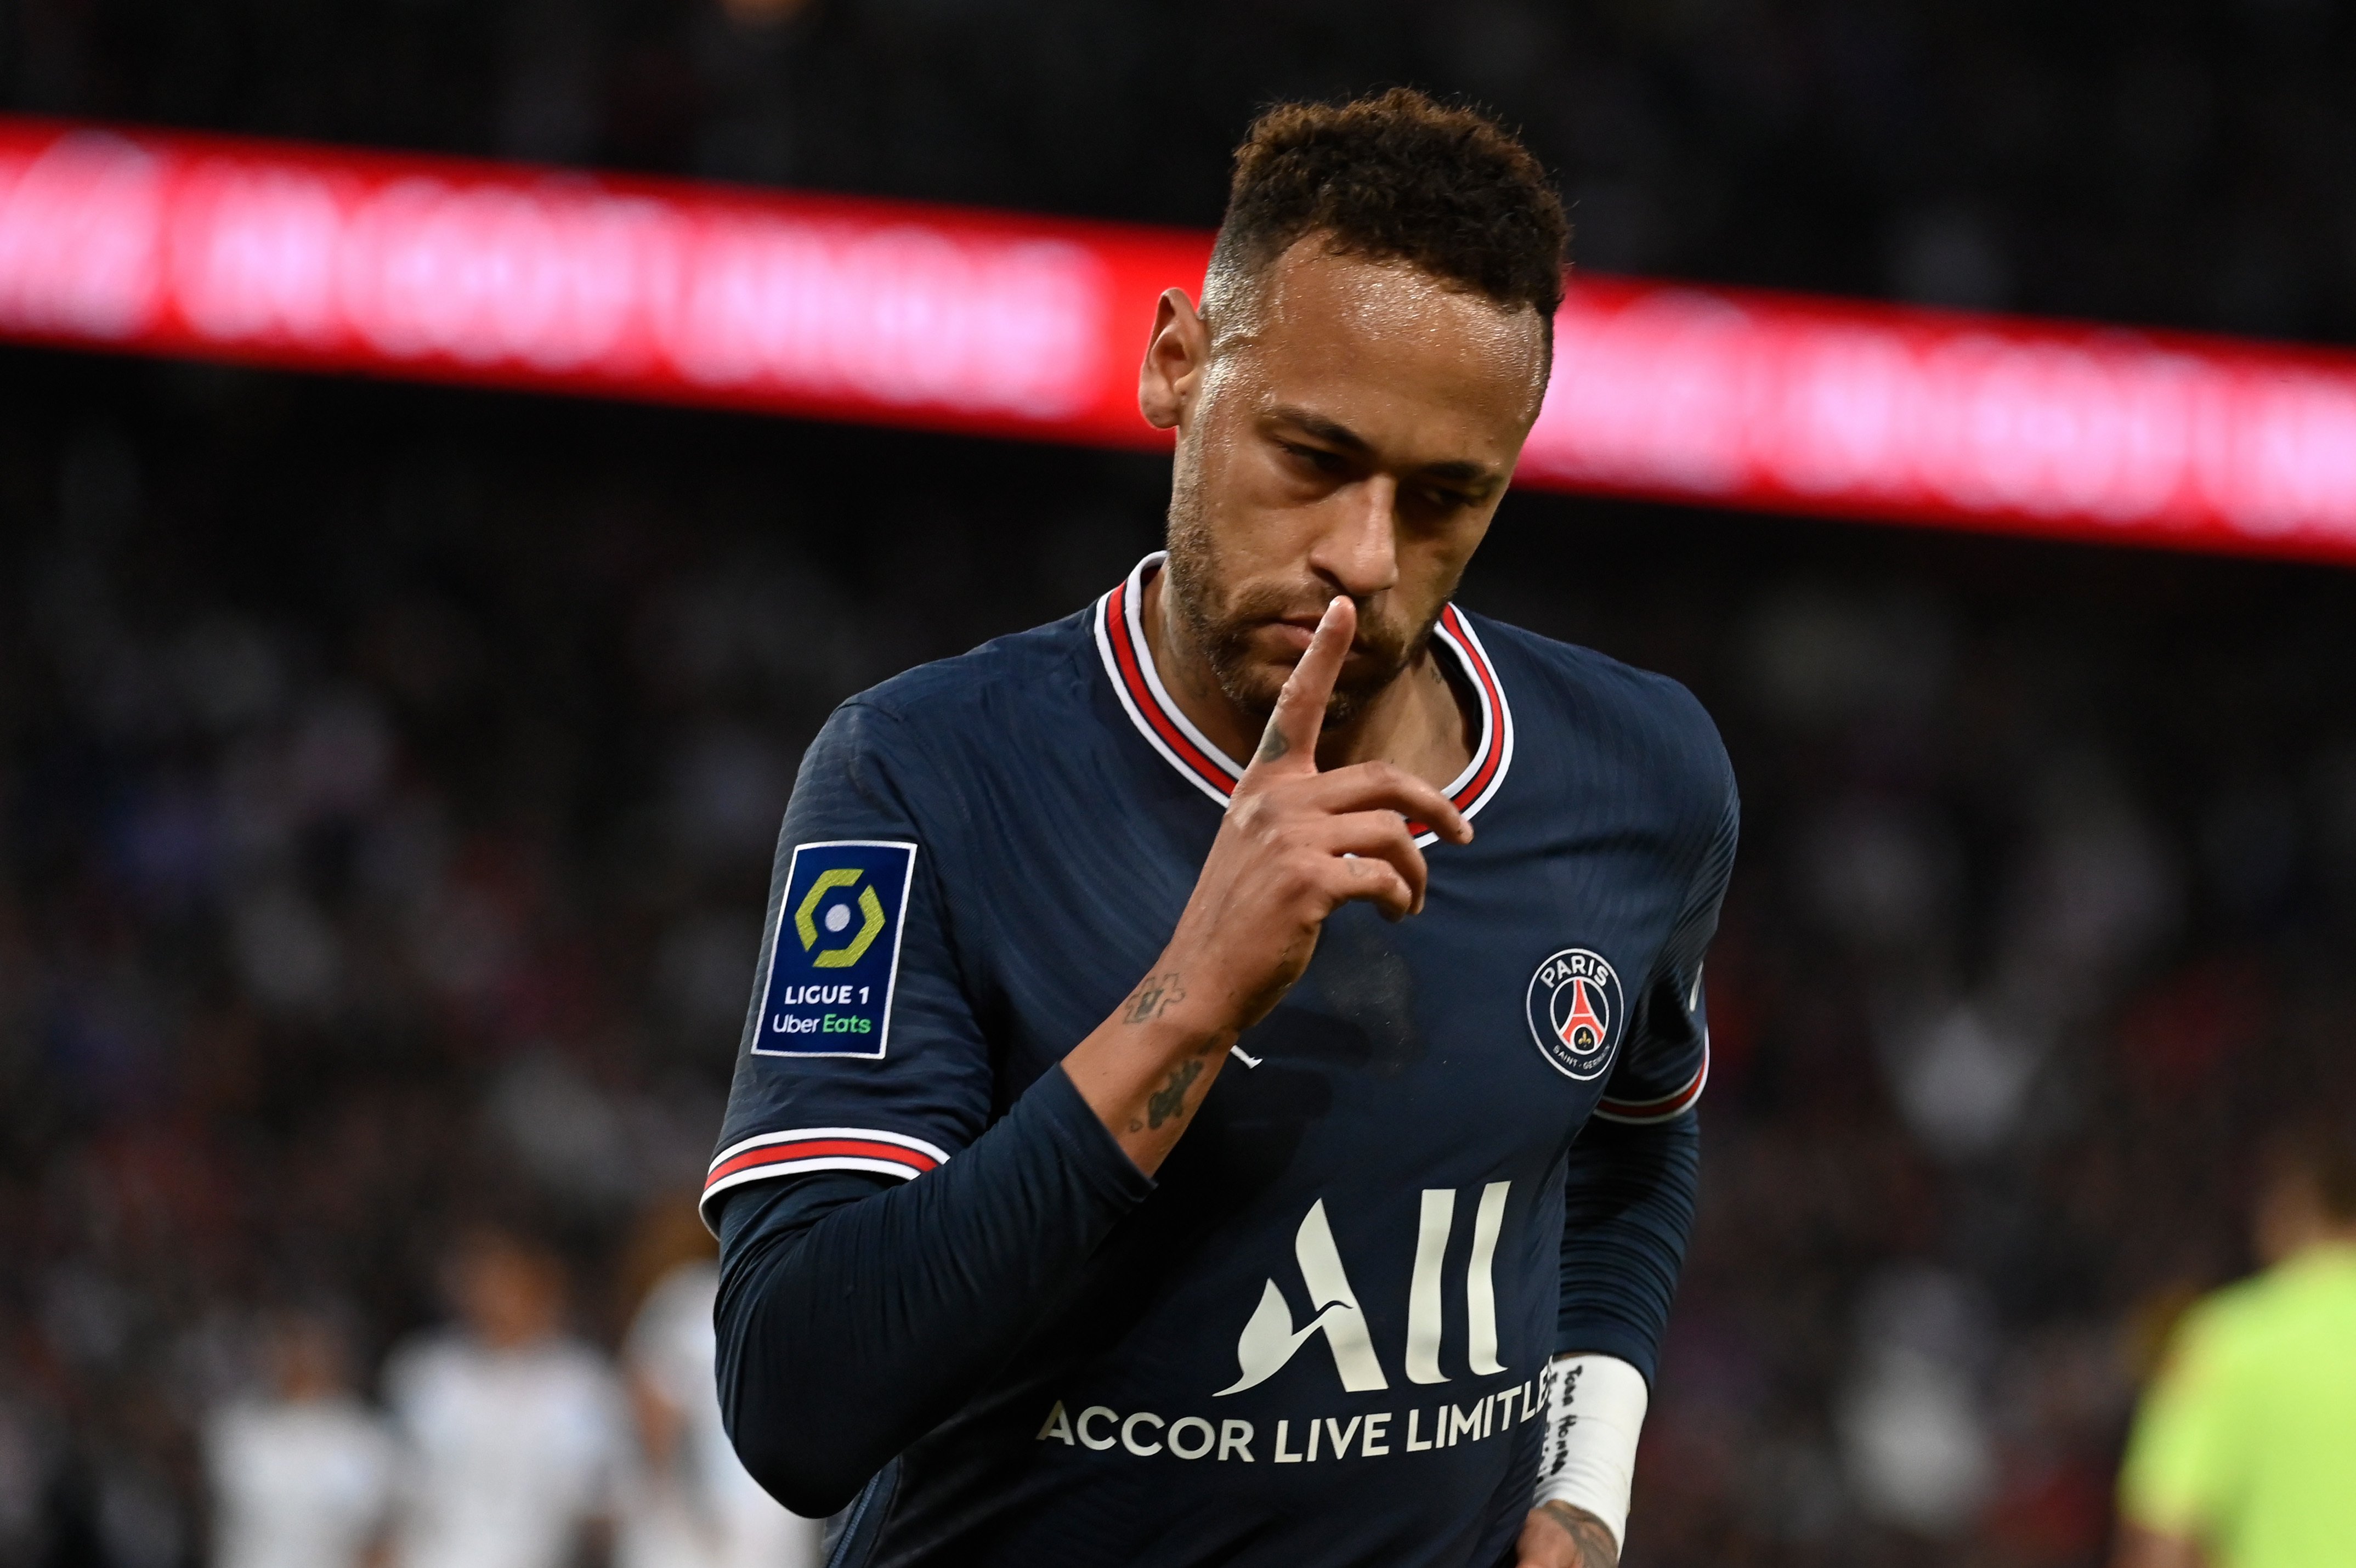 Oferta de 120 milions per Neymar, sacseja el mercat de fitxatges